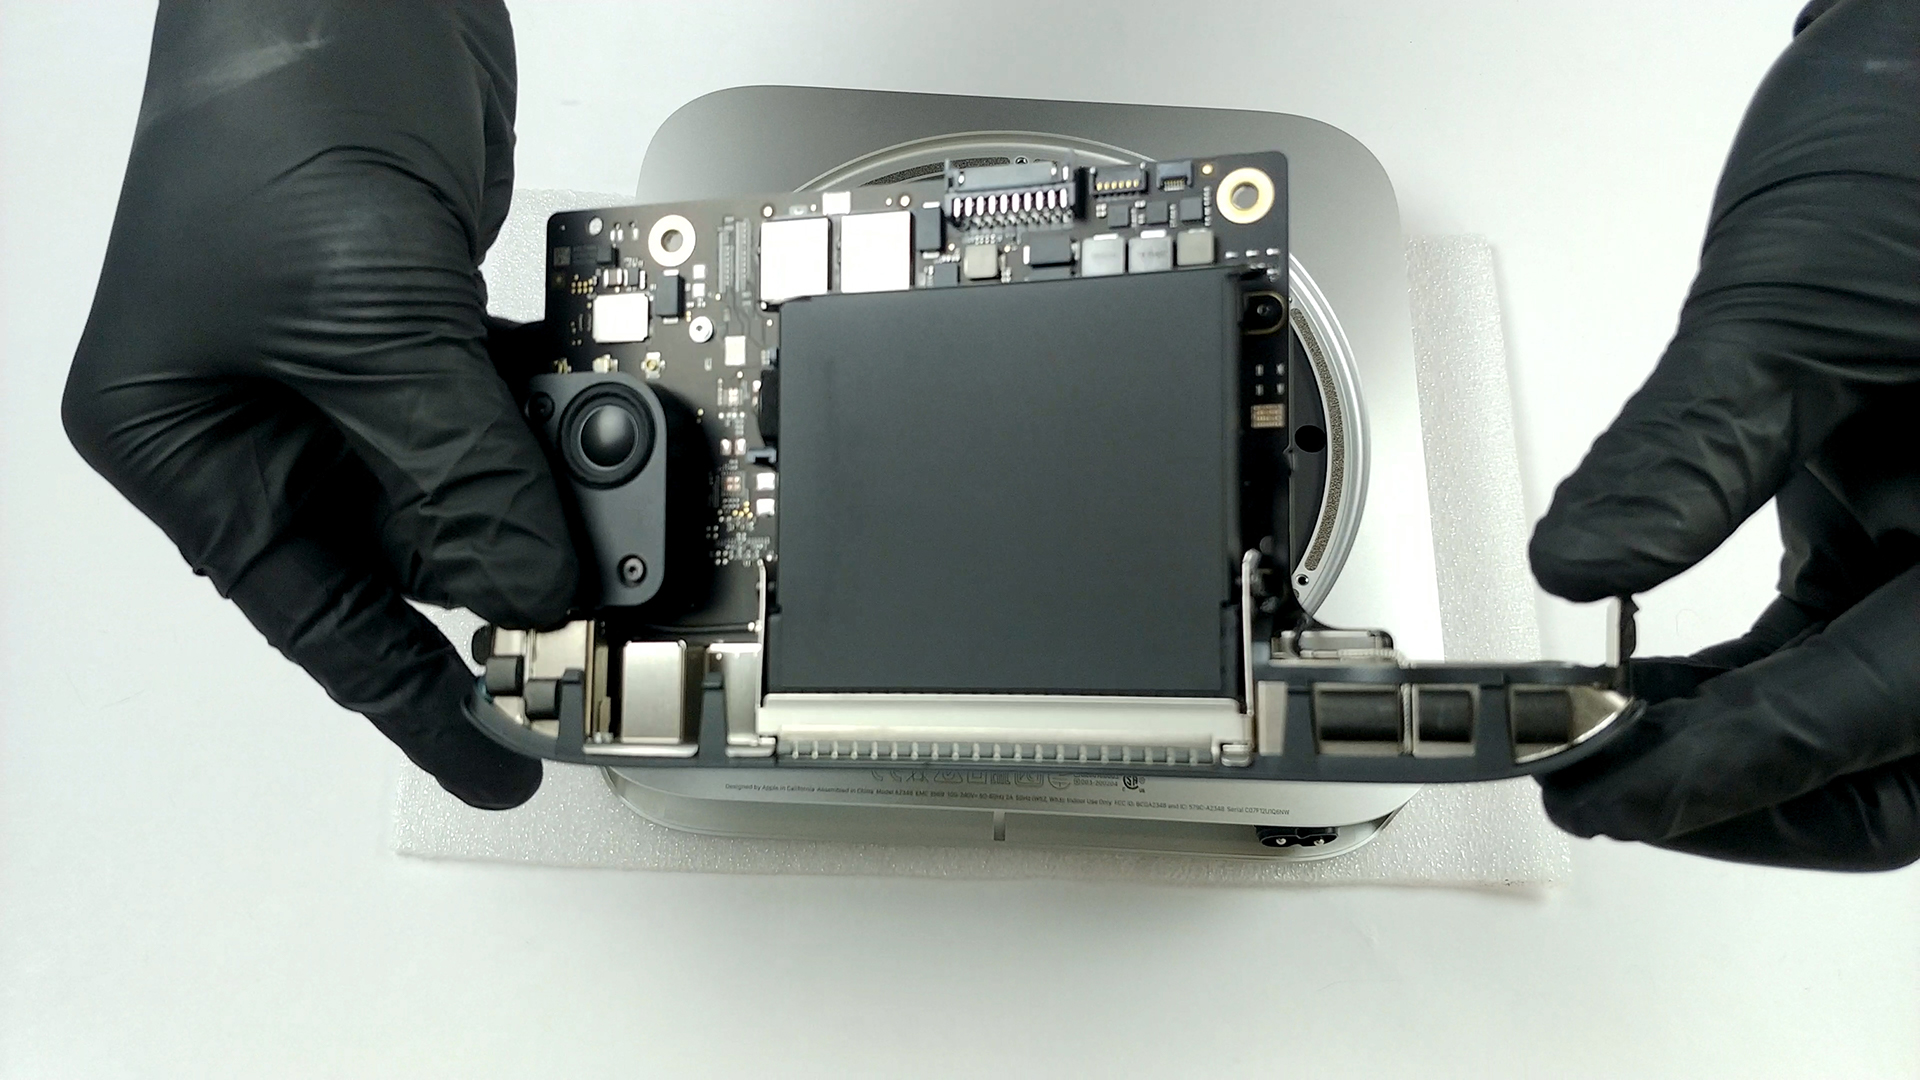 Aparecen las primeras imágenes de los M1 en un vídeo desmontando el Mac mini